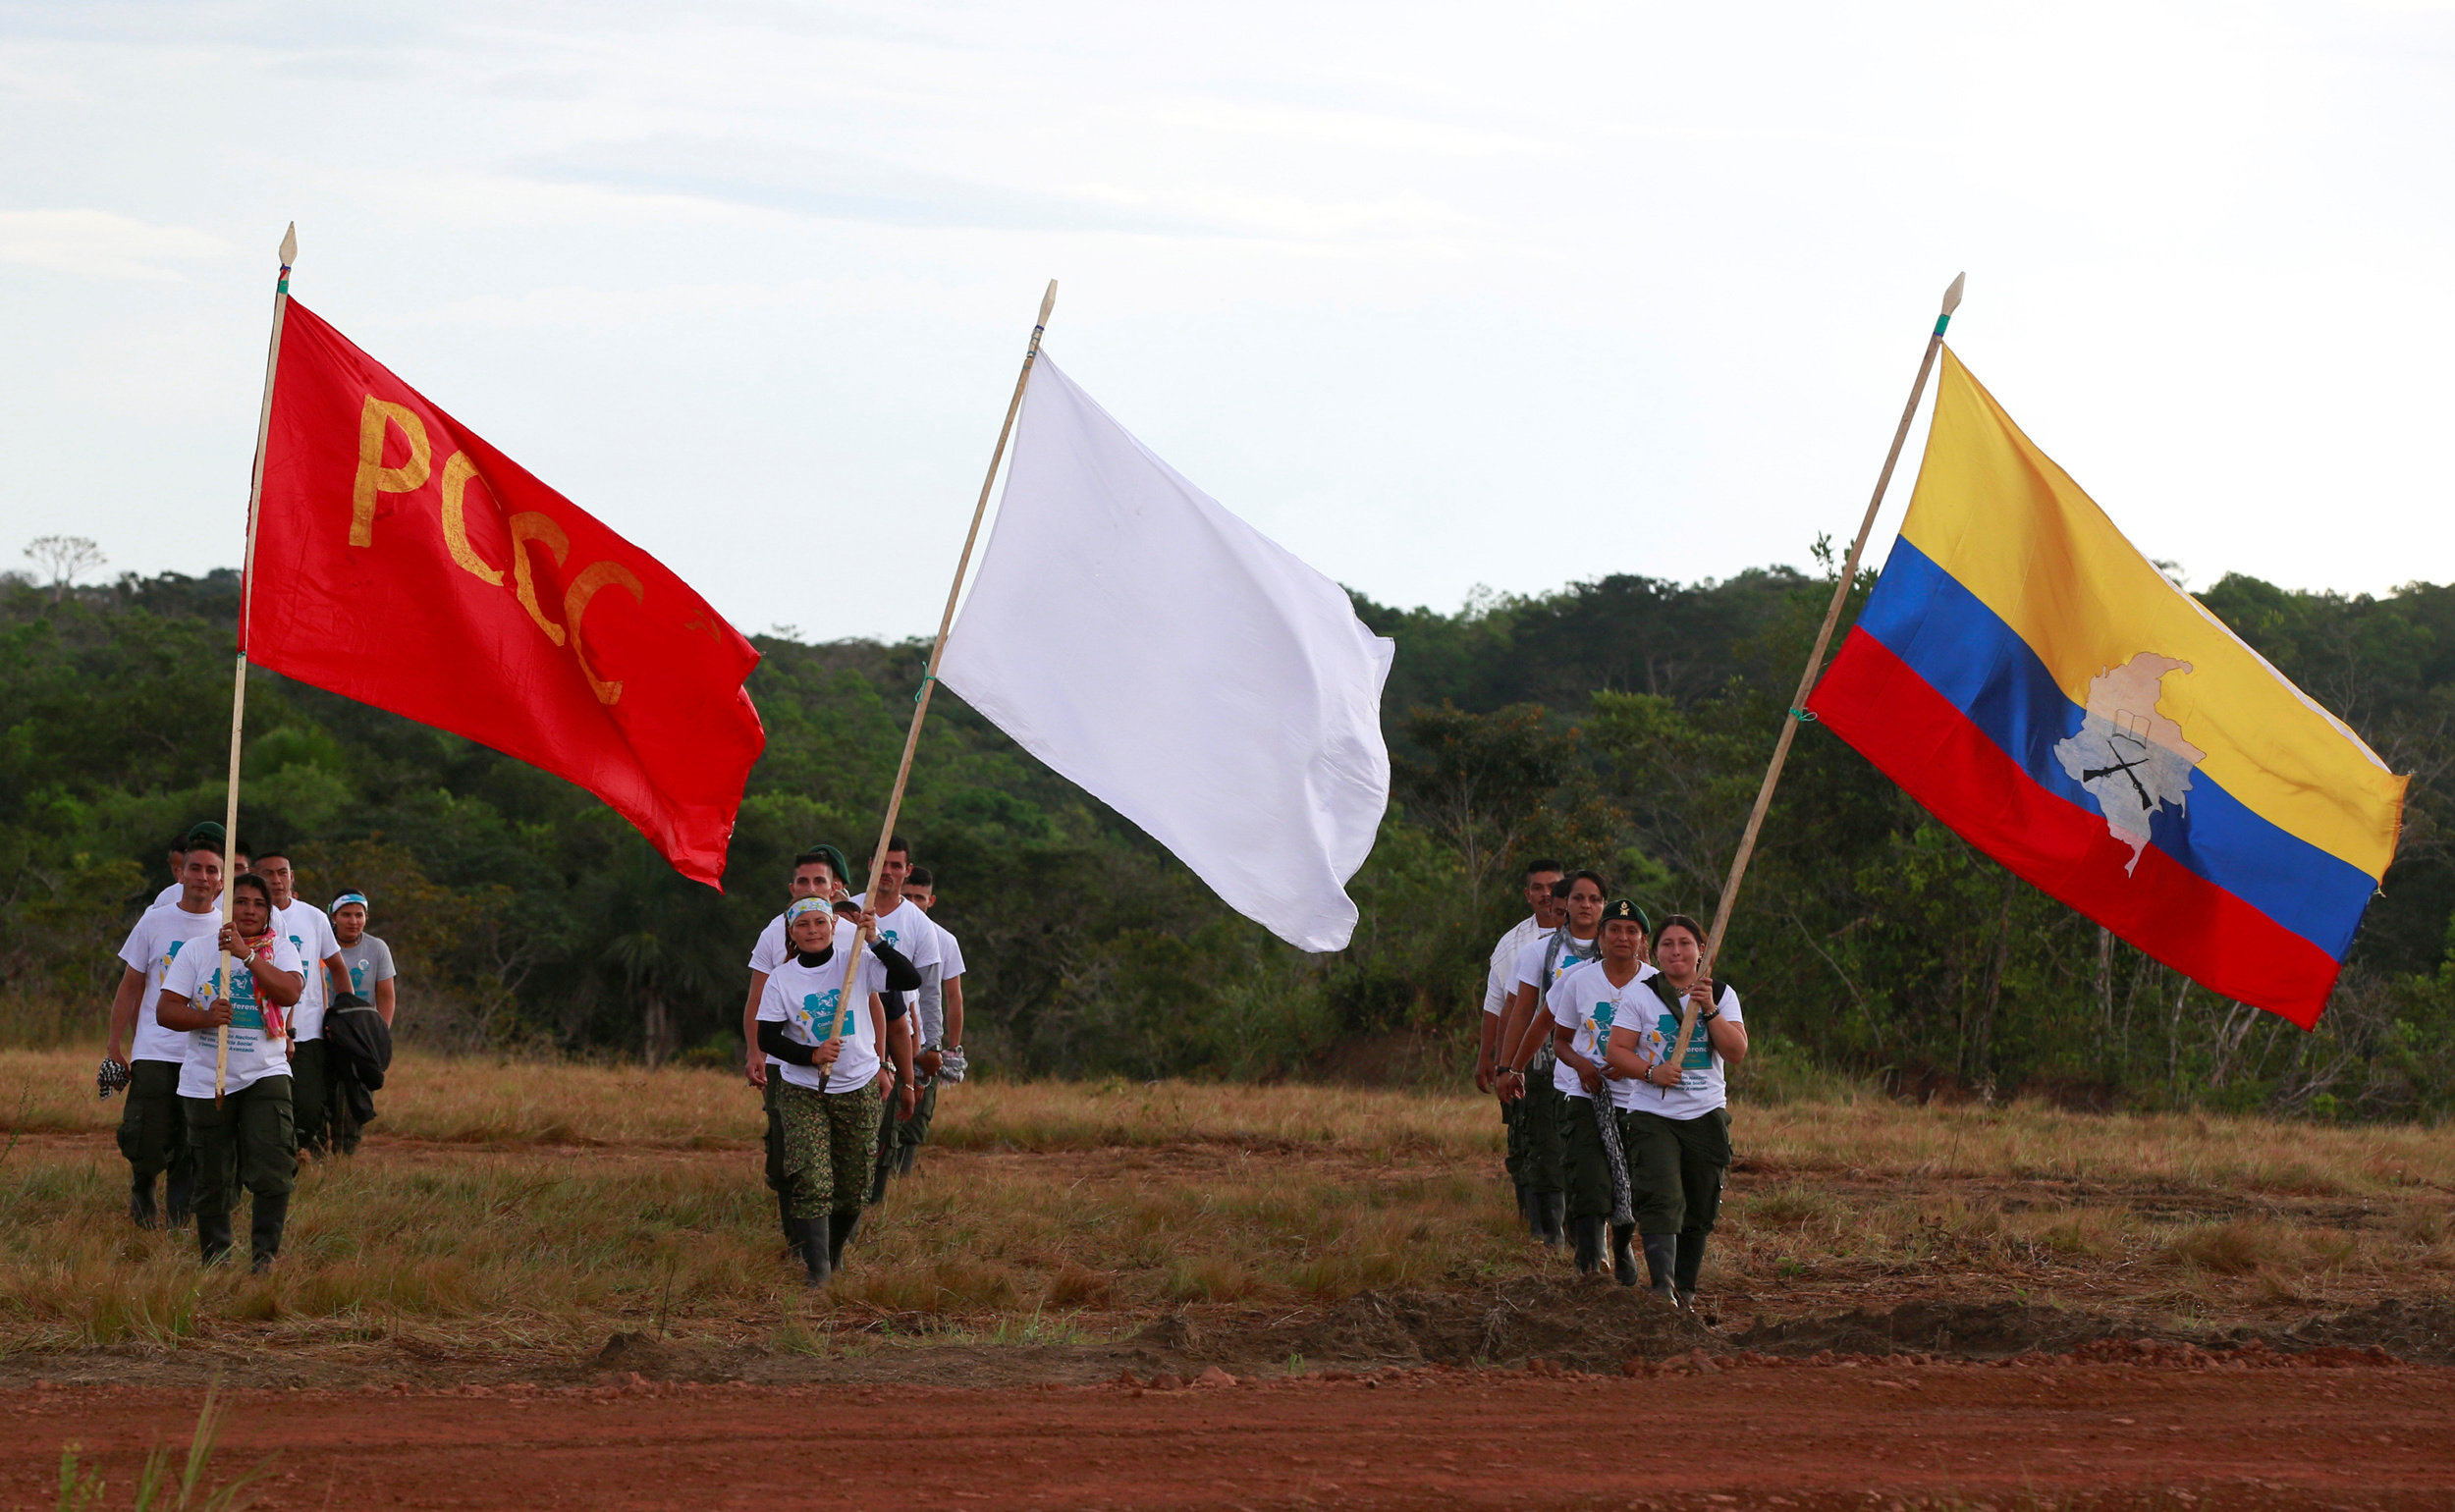 «Ο πόλεμος στην Κολομβία τελείωσε», το όμοφωνο μήνυμα του FARC